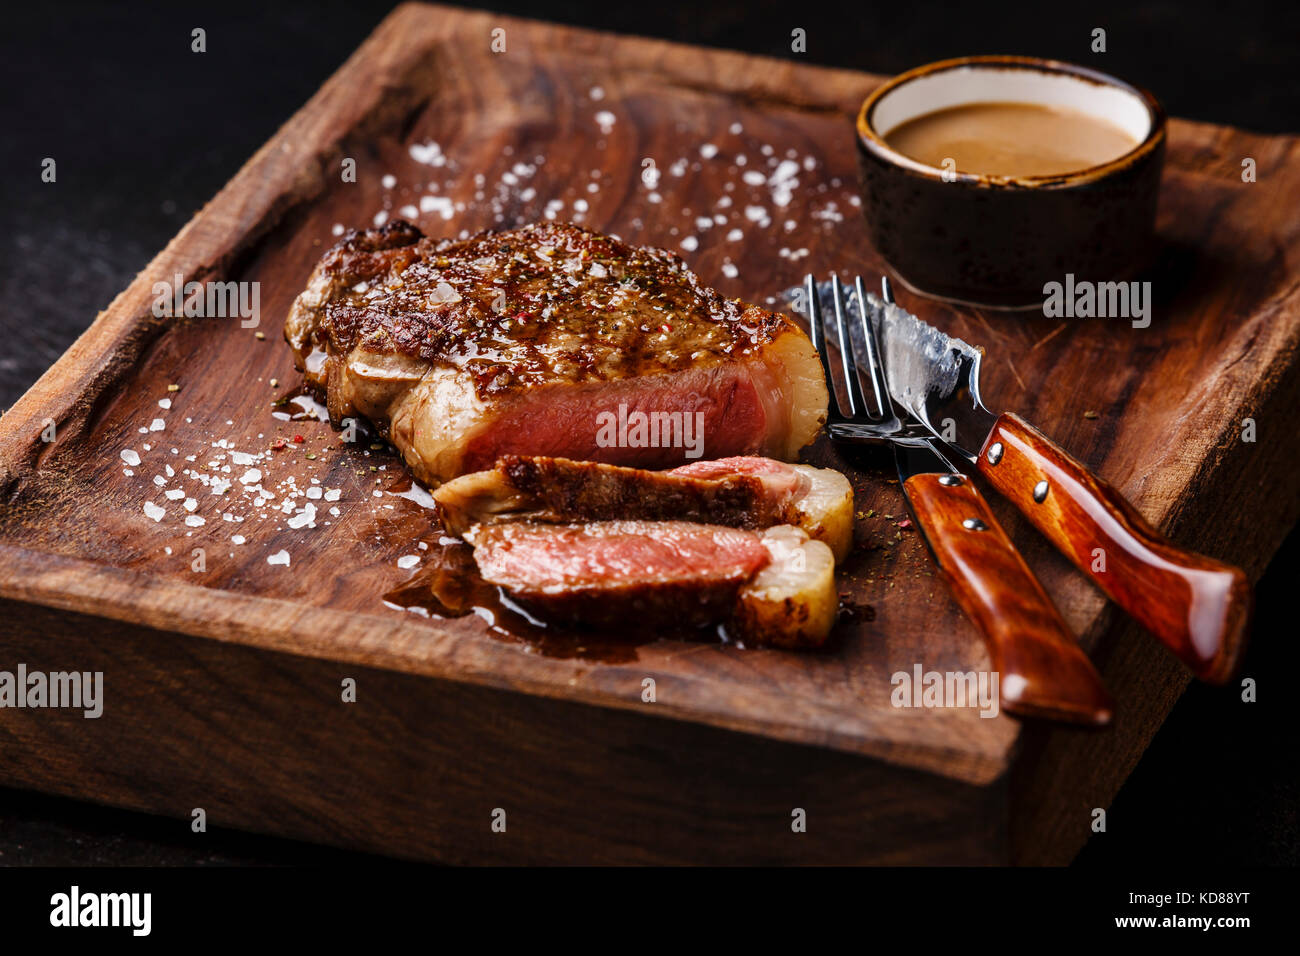 Geschnetzeltes Fleisch vom Grill Steak New York Roastbeef mit Pfeffersauce  und Messer und Gabel auf Holzbrett auf schwarzem Hintergrund  Stockfotografie - Alamy